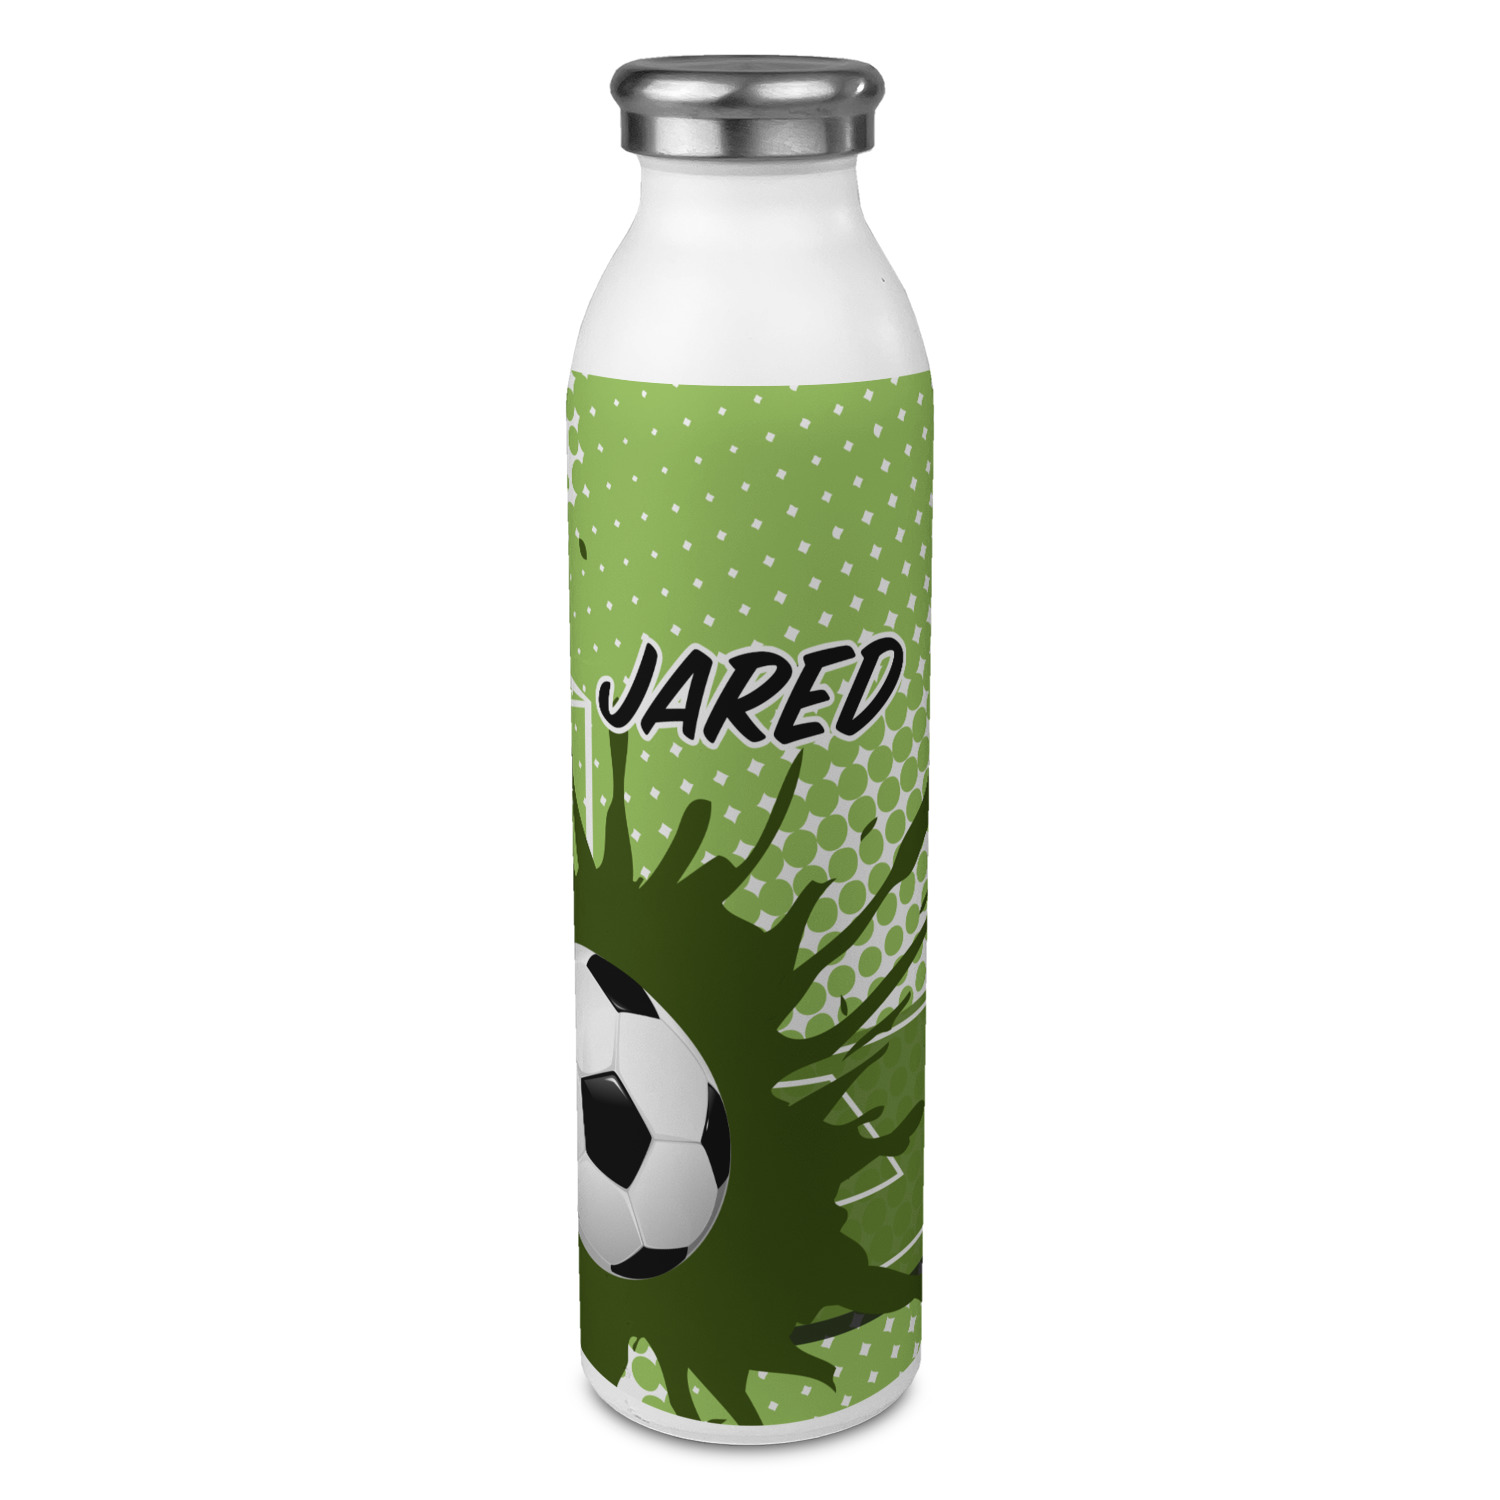 https://www.youcustomizeit.com/common/MAKE/1833419/Soccer-20oz-Water-Bottles-Full-Print-Front-Main.jpg?lm=1665527440